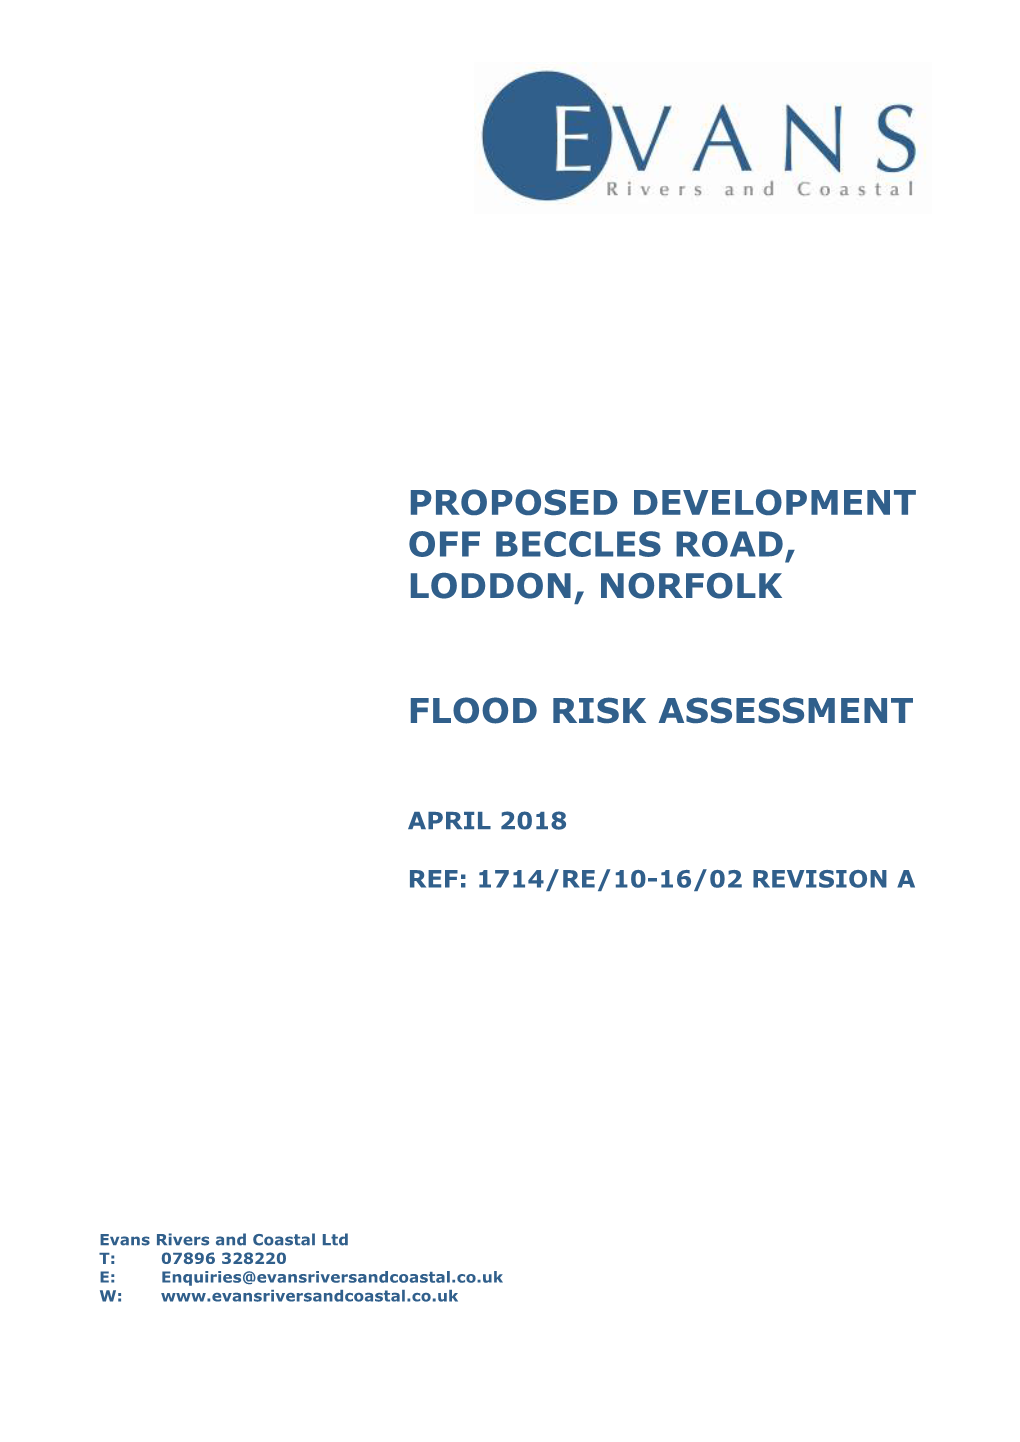 Proposed Development Off Beccles Road, Loddon, Norfolk Flood Risk Assessment